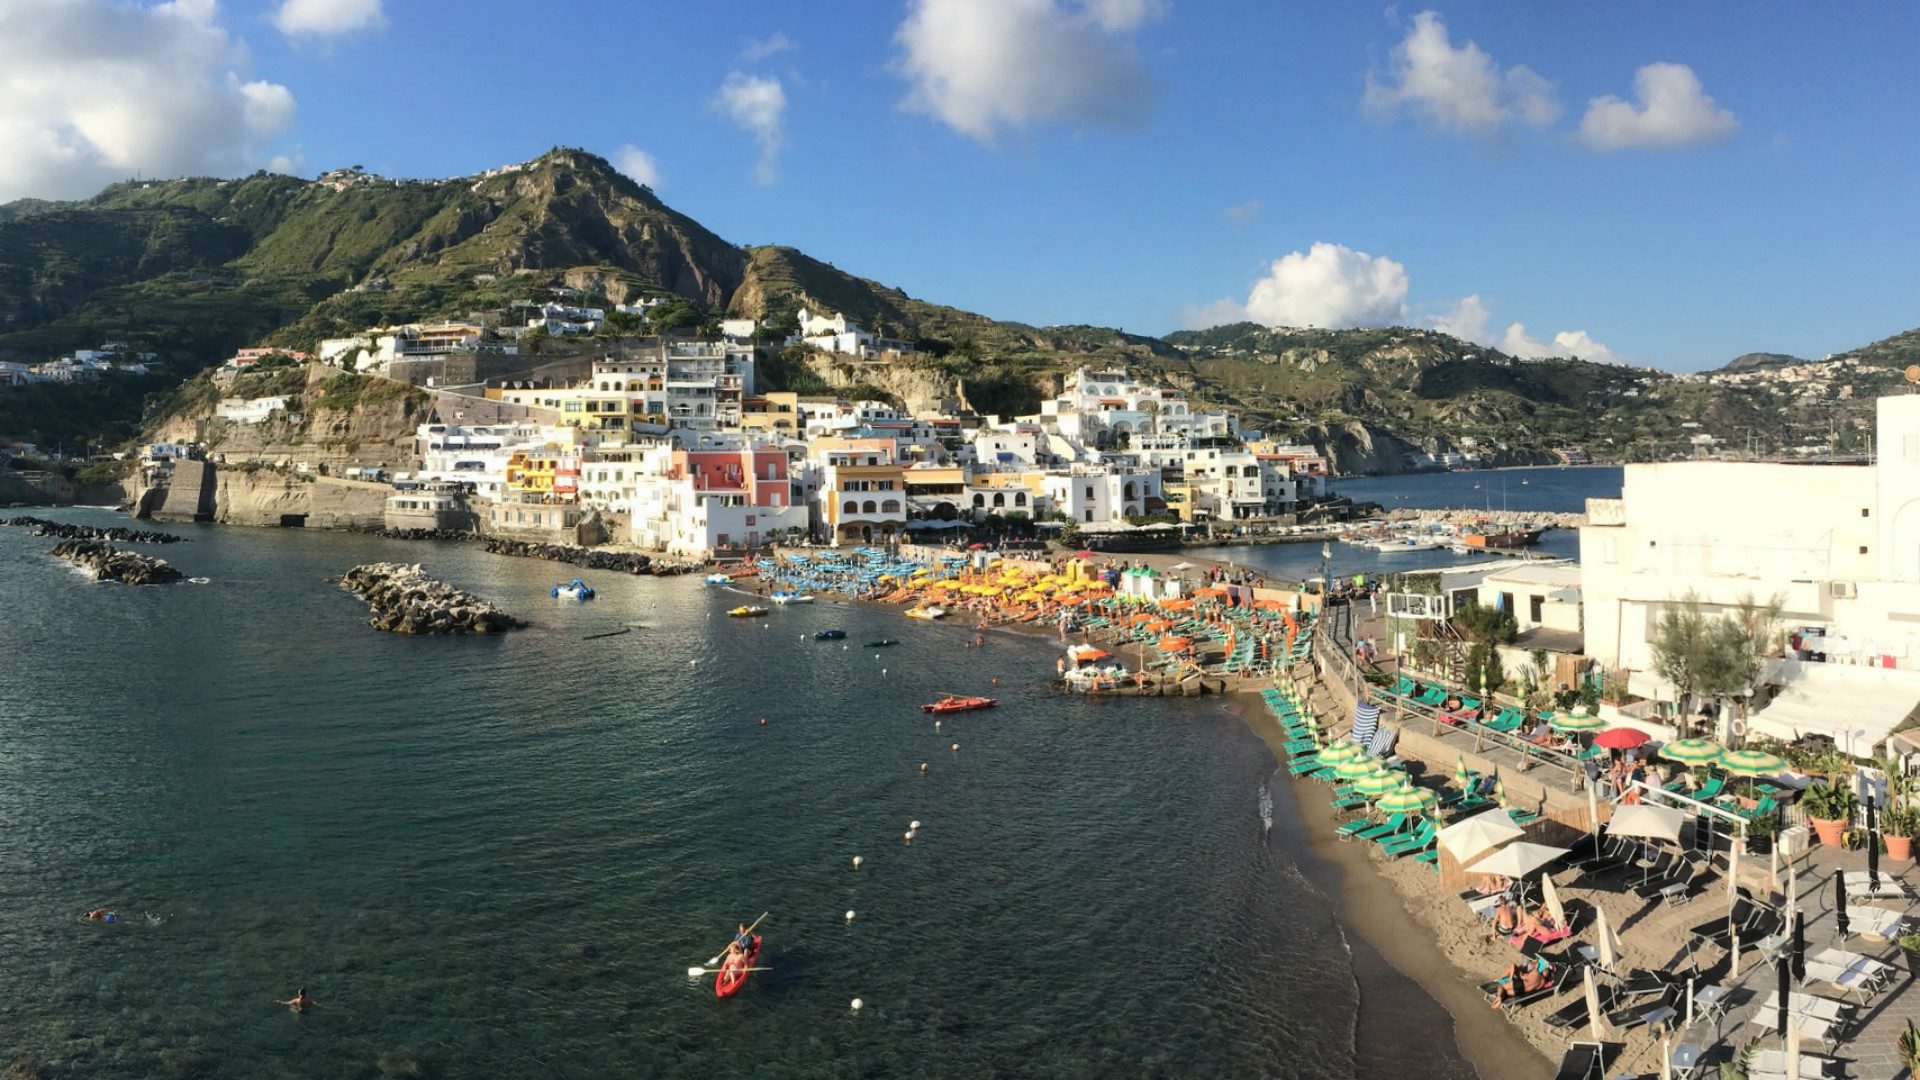 L'île d'Ischia a été durement touchée par un séisme, le 24 août 2017 (Photo:marktristan/Flickr/CC BY-SA 2.0)